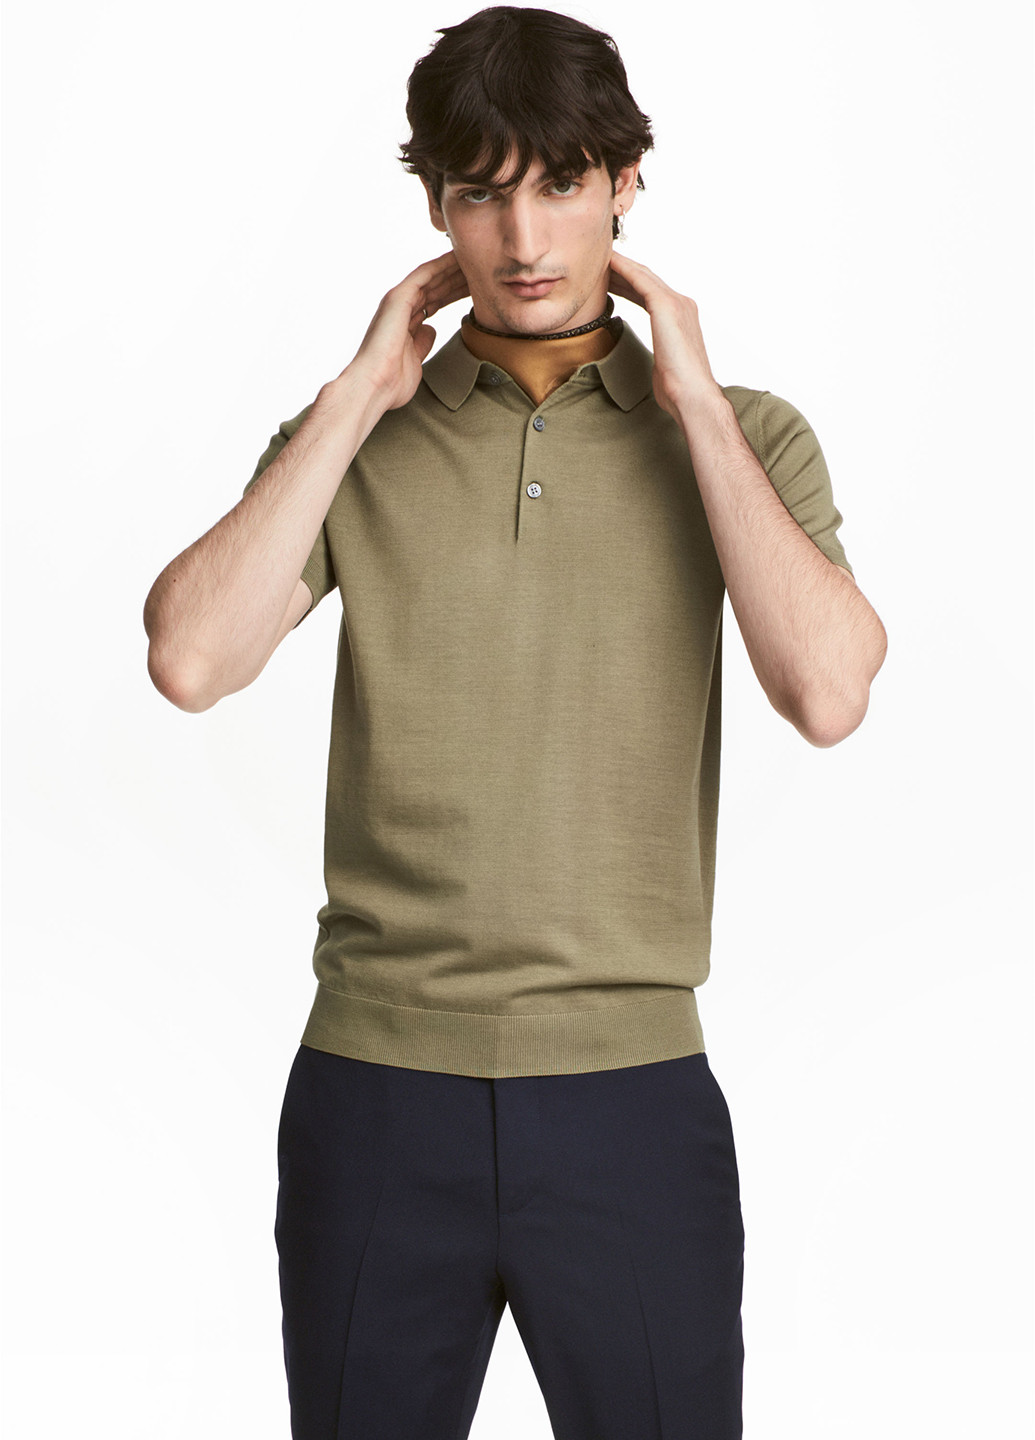 Оливковая (хаки) футболка-поло для мужчин H&M меланжевая